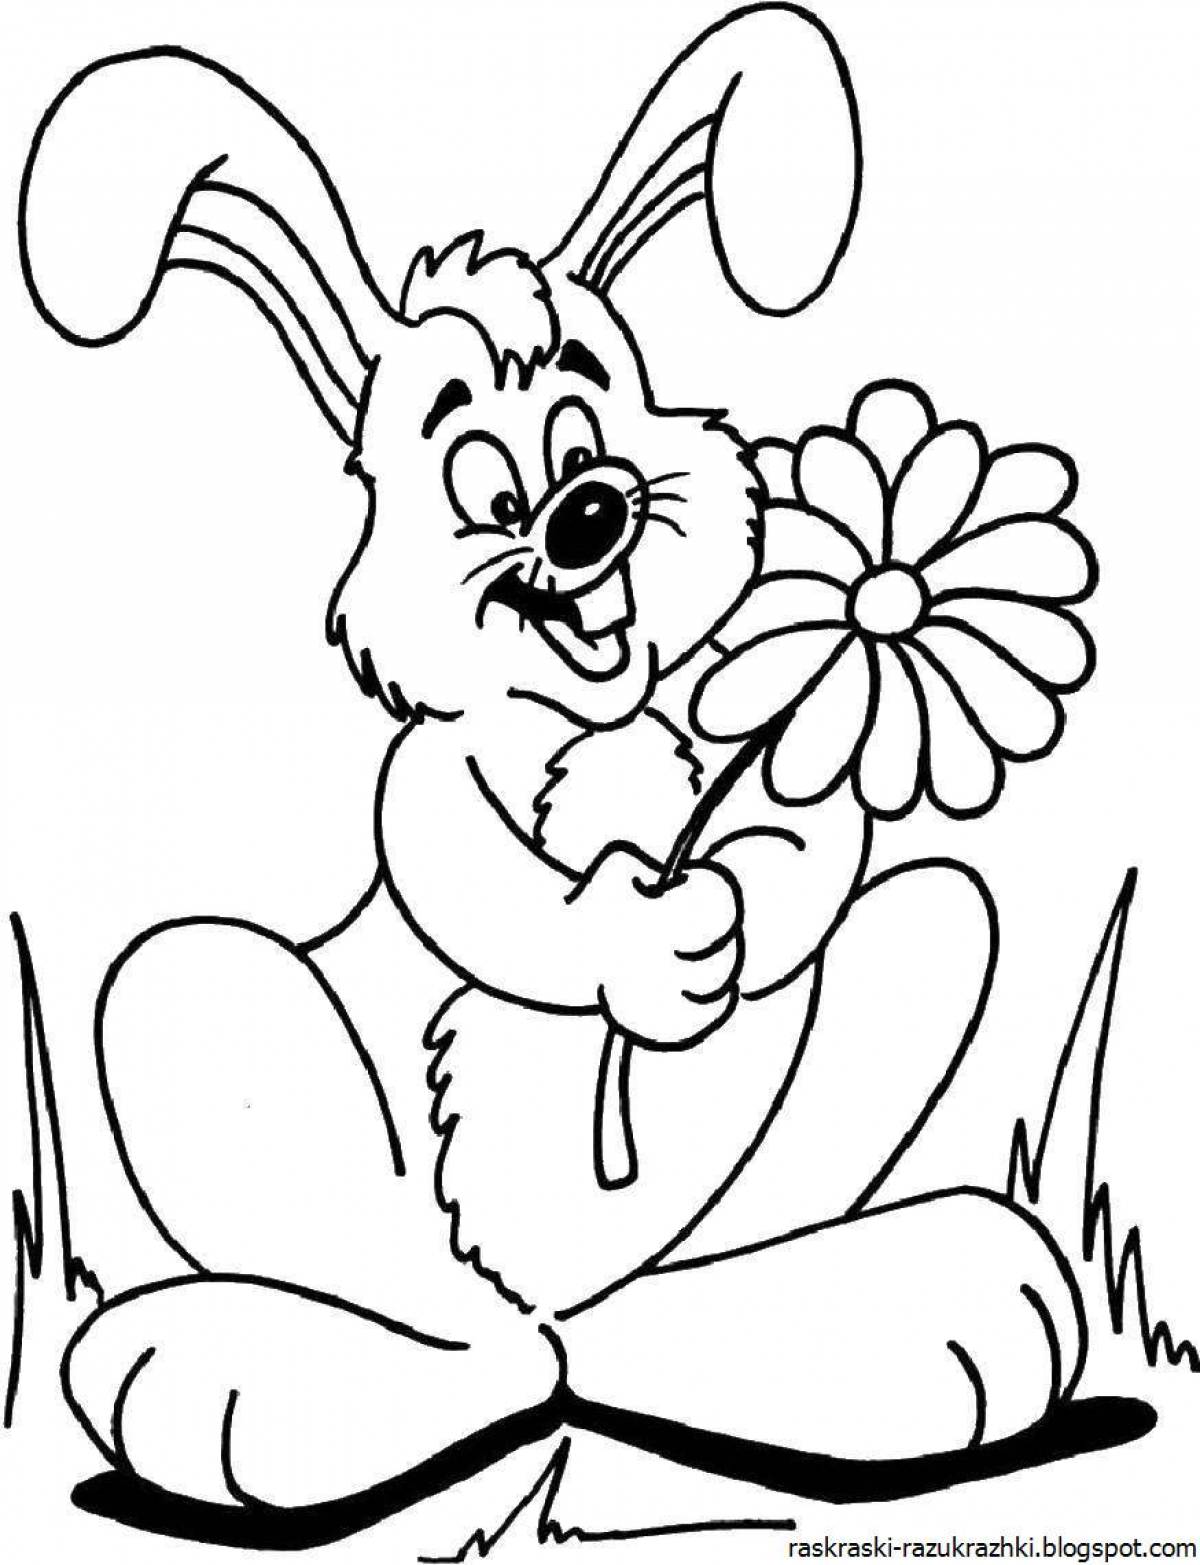 Кролик-раскраска с длинными усами